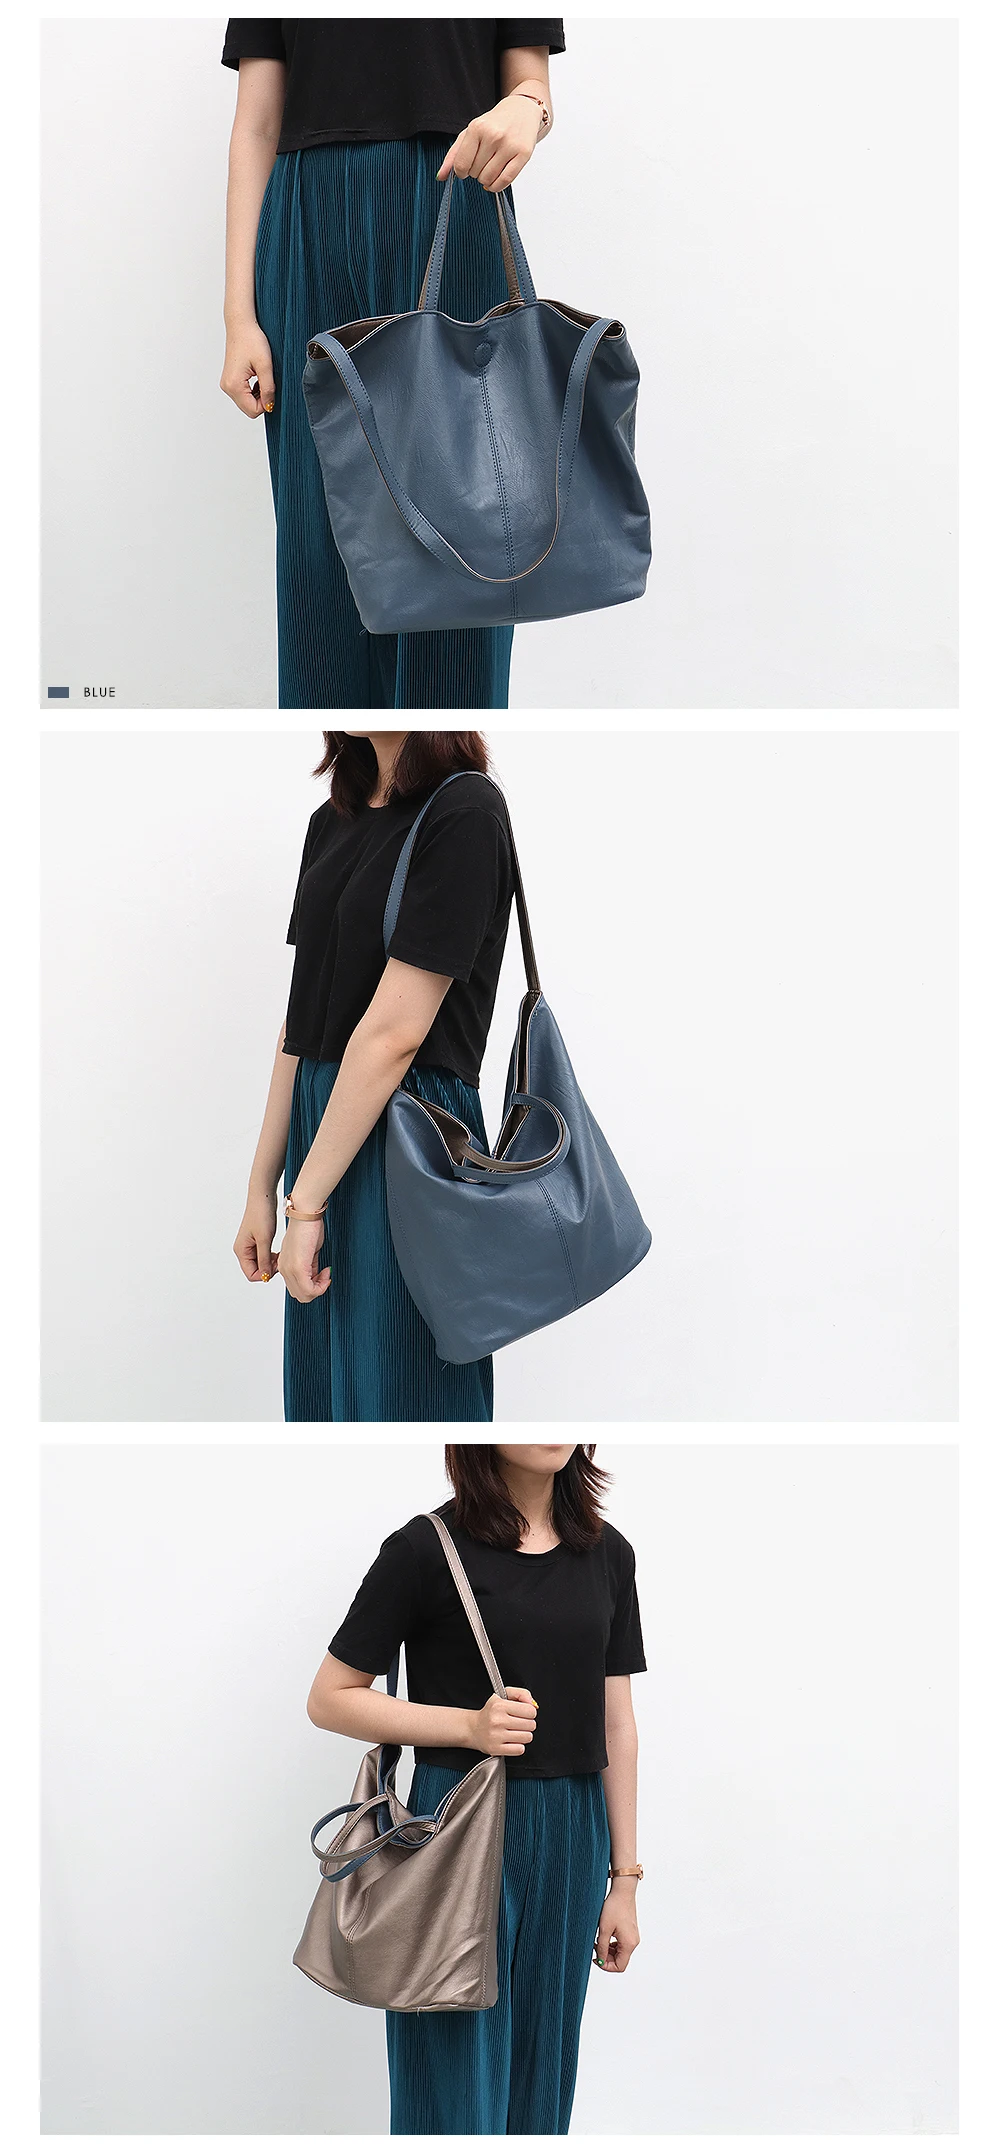 CEZIRA Vegan кожаная повседневная модная женская сумка-тоут двухцветная Двусторонняя женская мягкая большая сумка через плечо и через плечо женская сумка-хобо